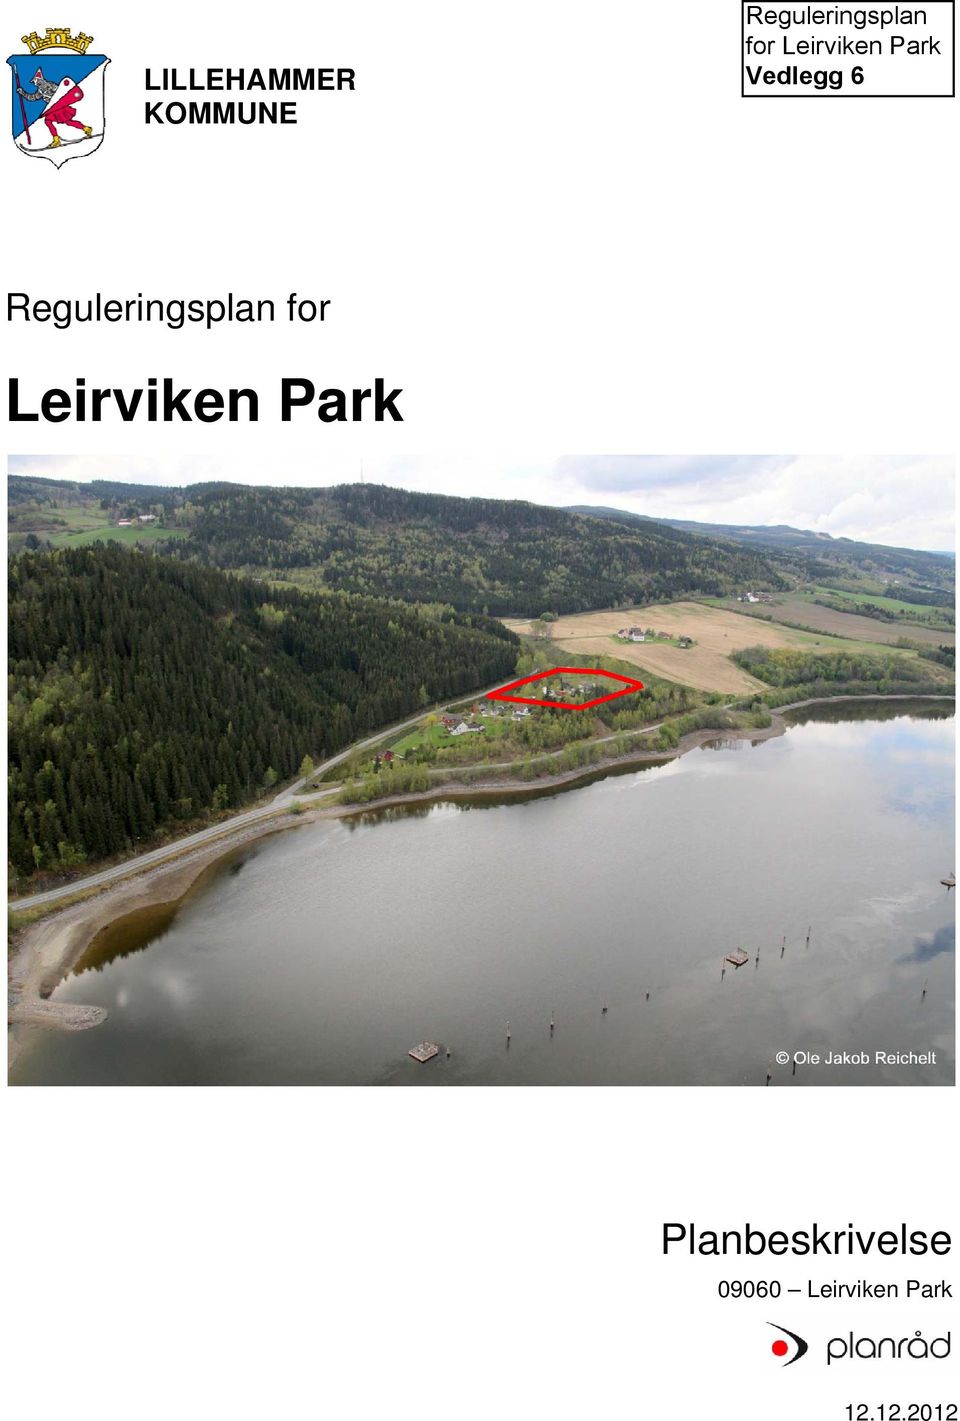 uleringssplan fo or Leiirviken Park P